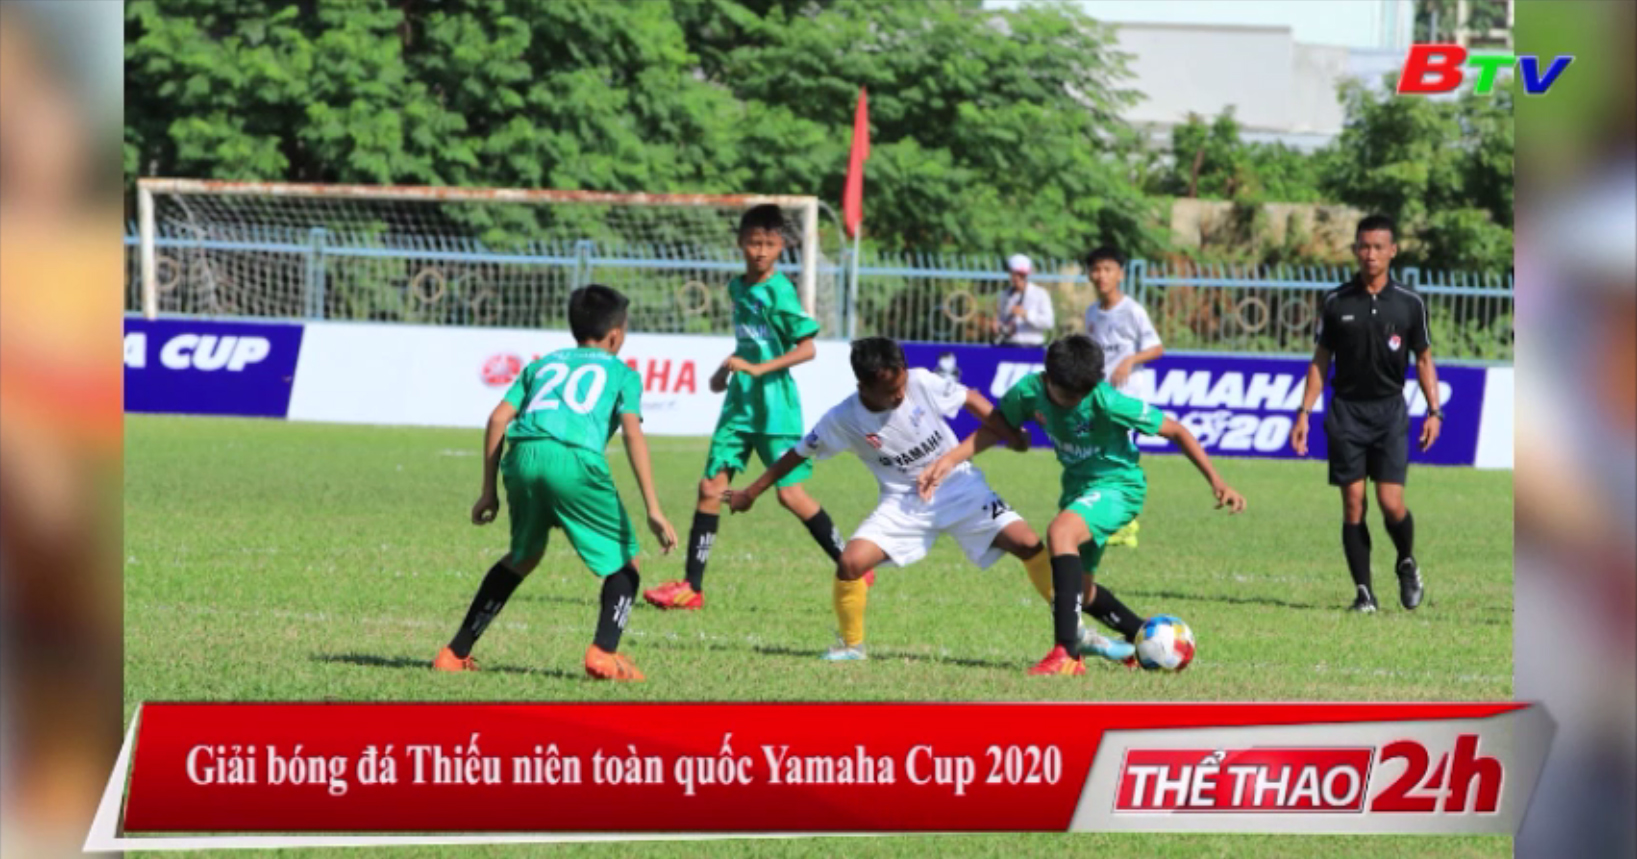 Giải bóng đá thiếu niên toàn quốc Yamaha Cup 2020